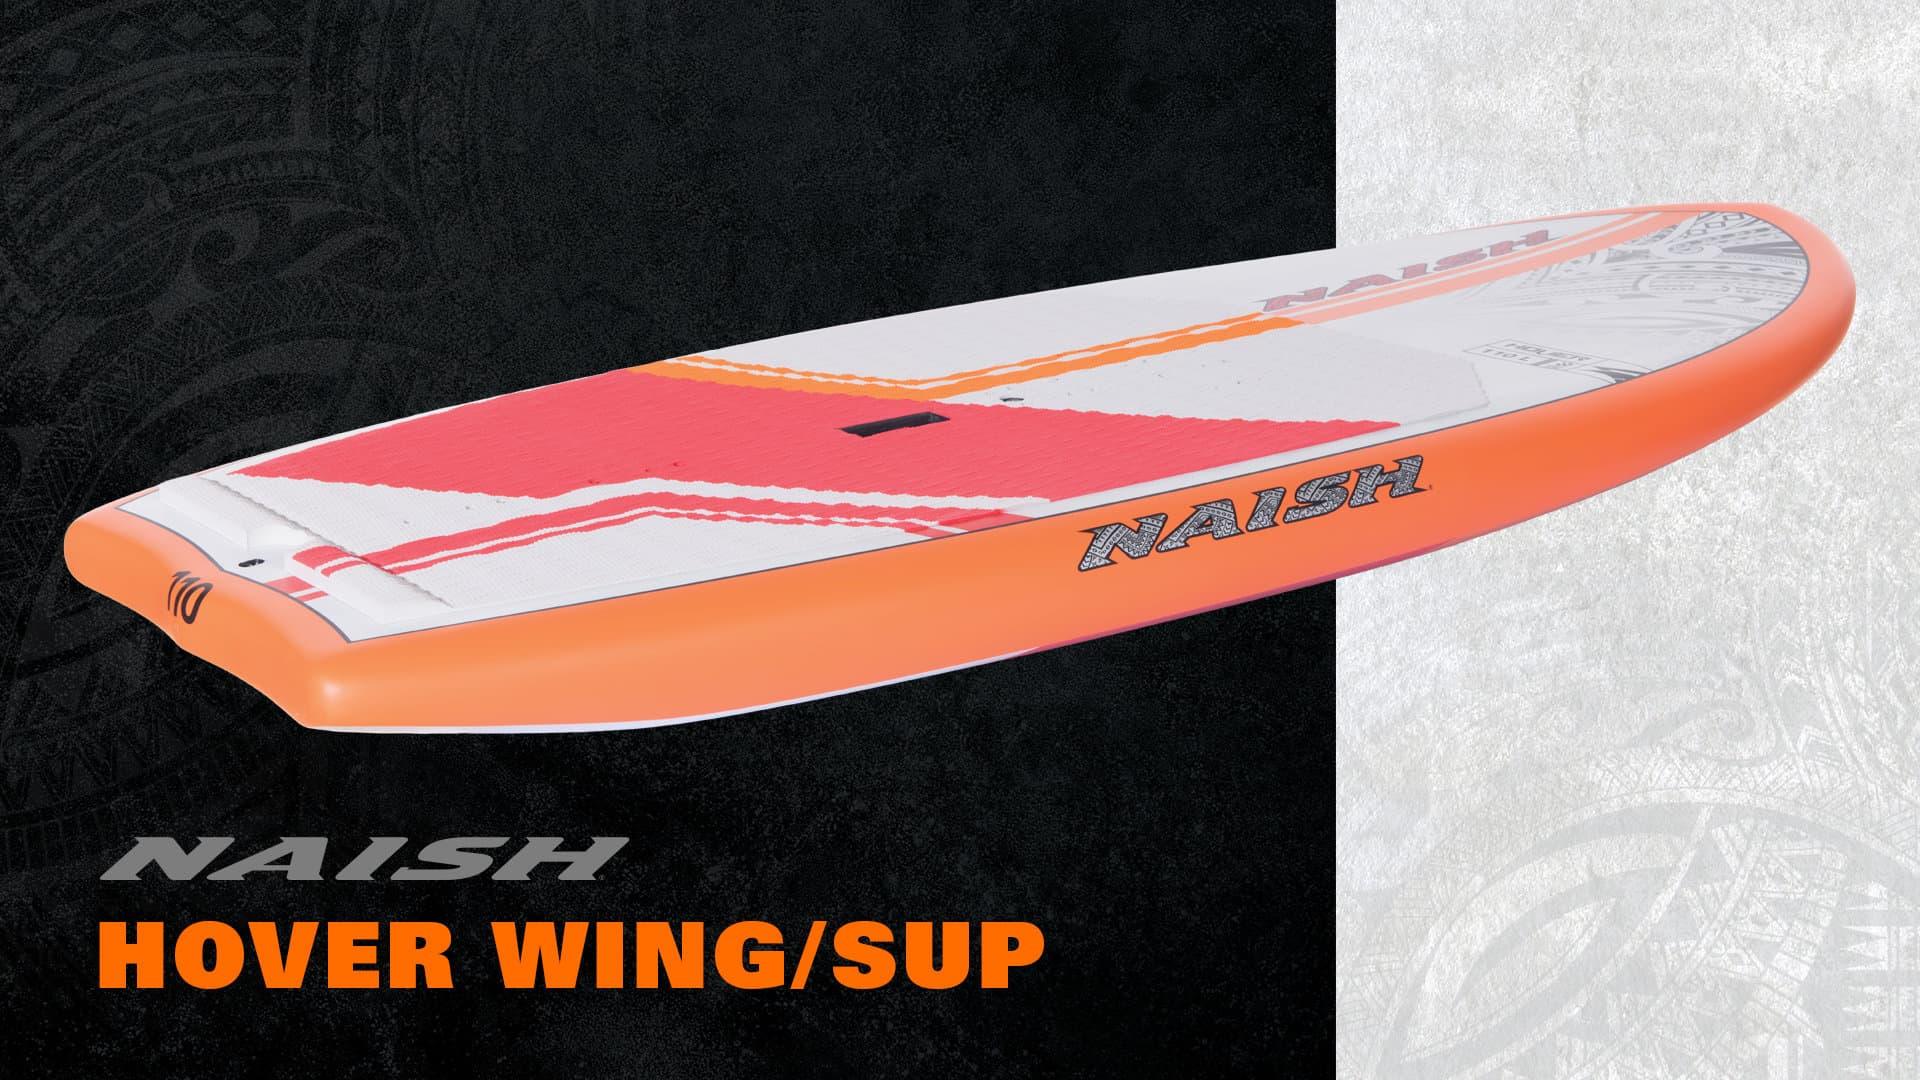 NEW S25 Naish Hover Wing/SUP Foil Board - Naish.com